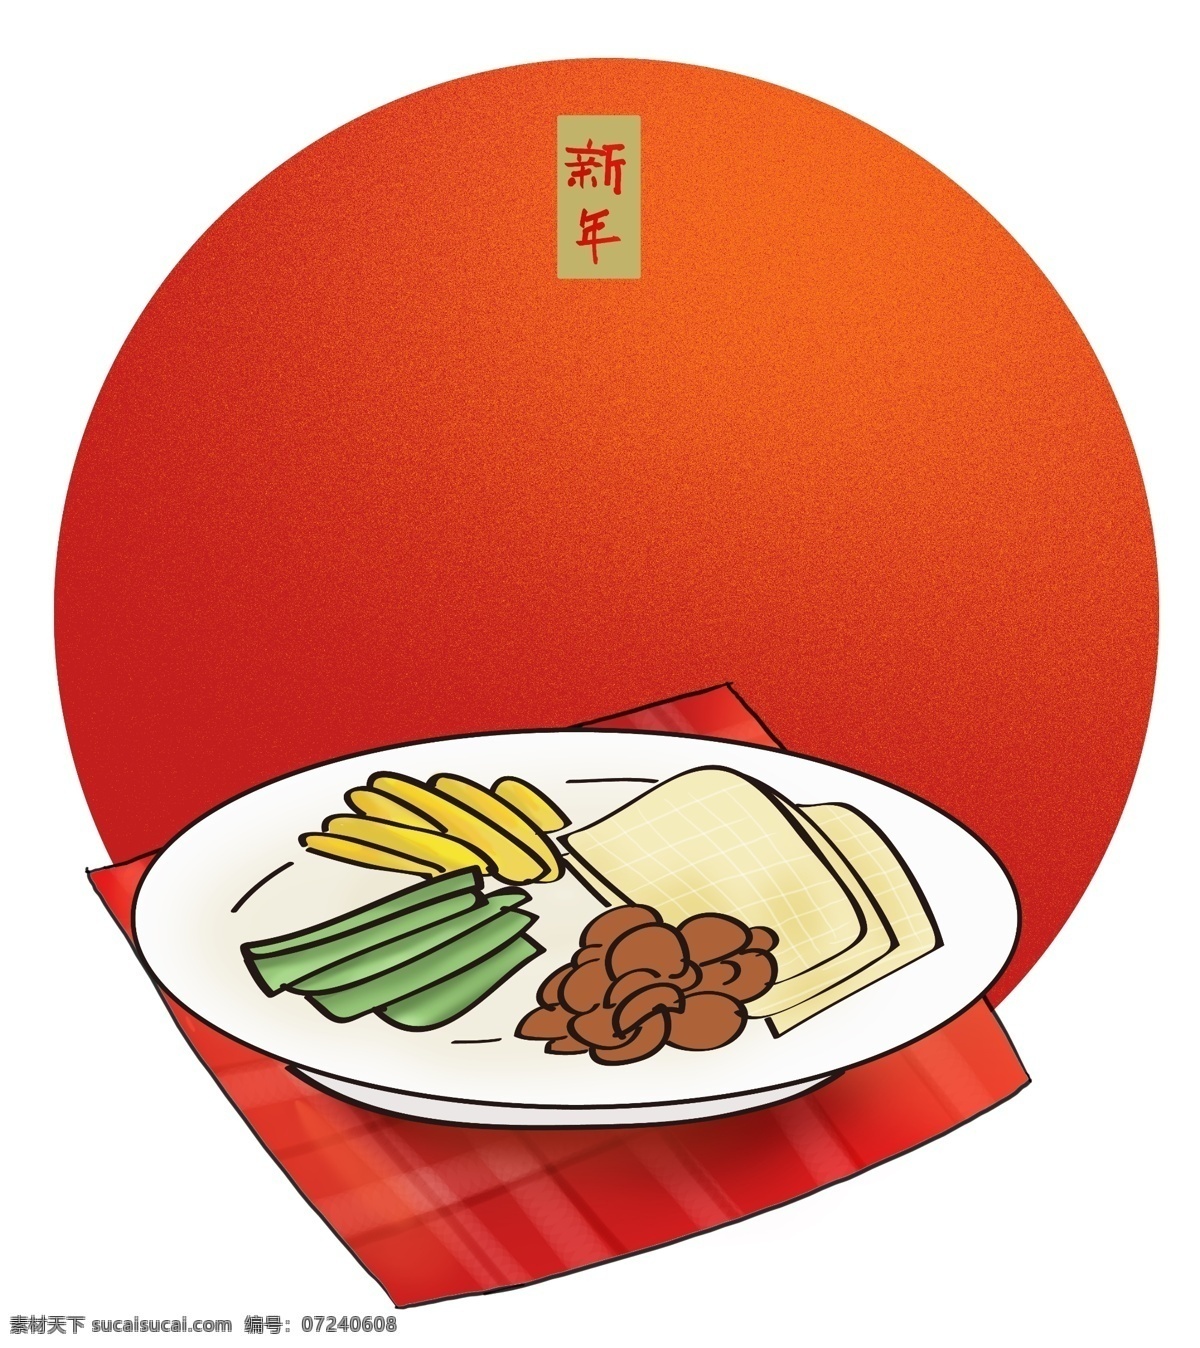 新年 传统 东北 美食 春节 元旦 中国风 食物 拜年 农历新年 中国传统美食 传统小吃 干豆腐 东北菜